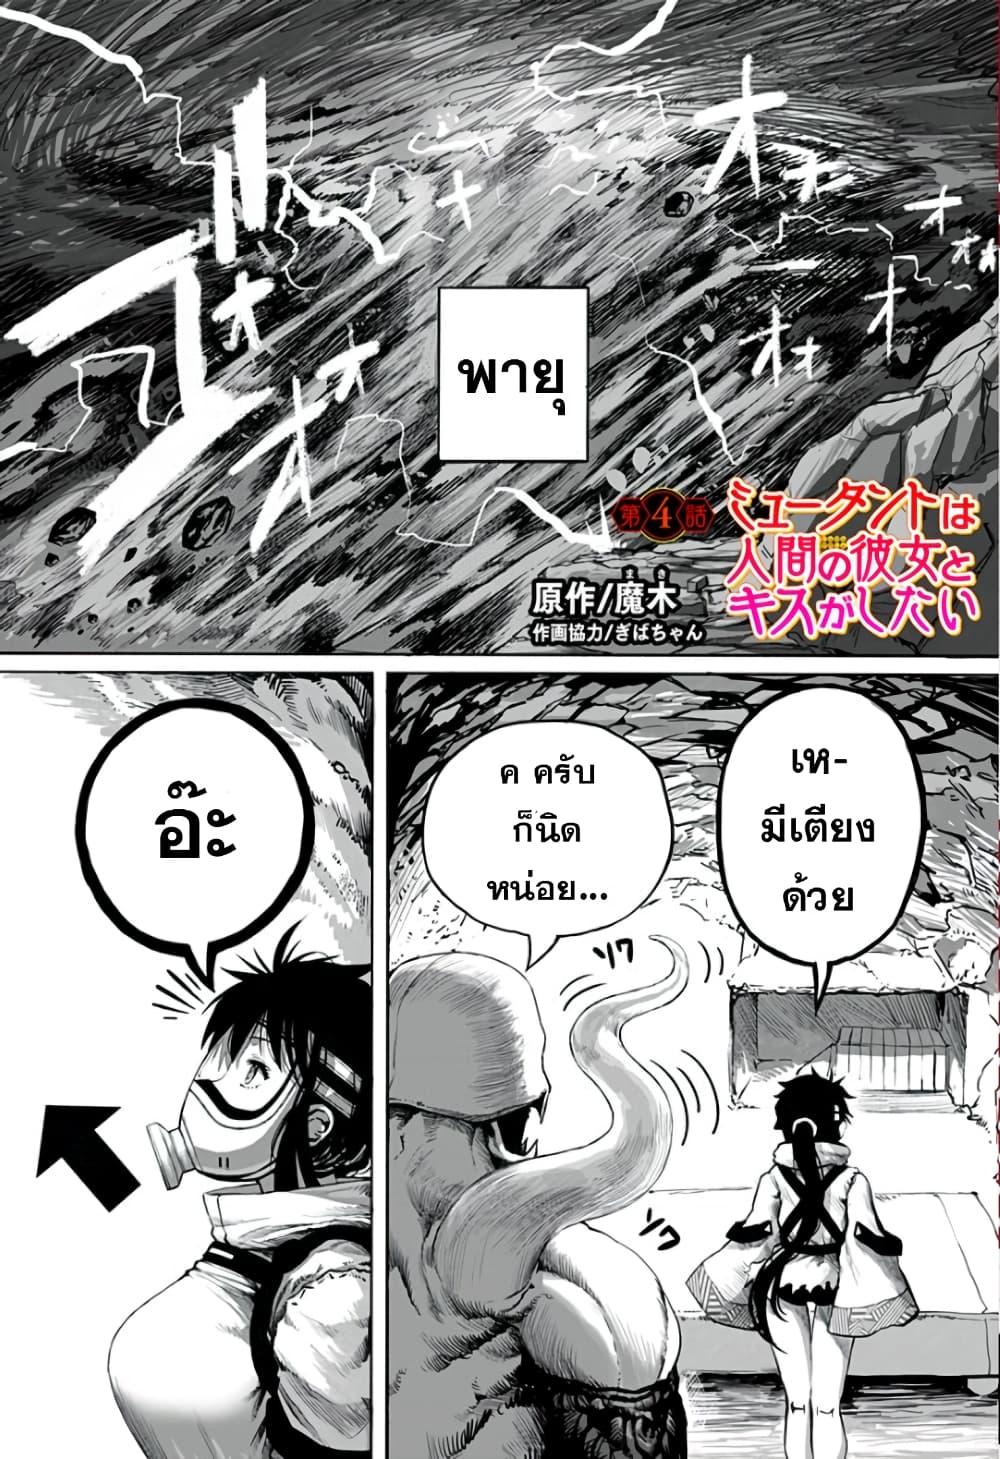 อ่านการ์ตูน Mutant wa ningen no kanojo to kisu ga shitai 4 ภาพที่ 1